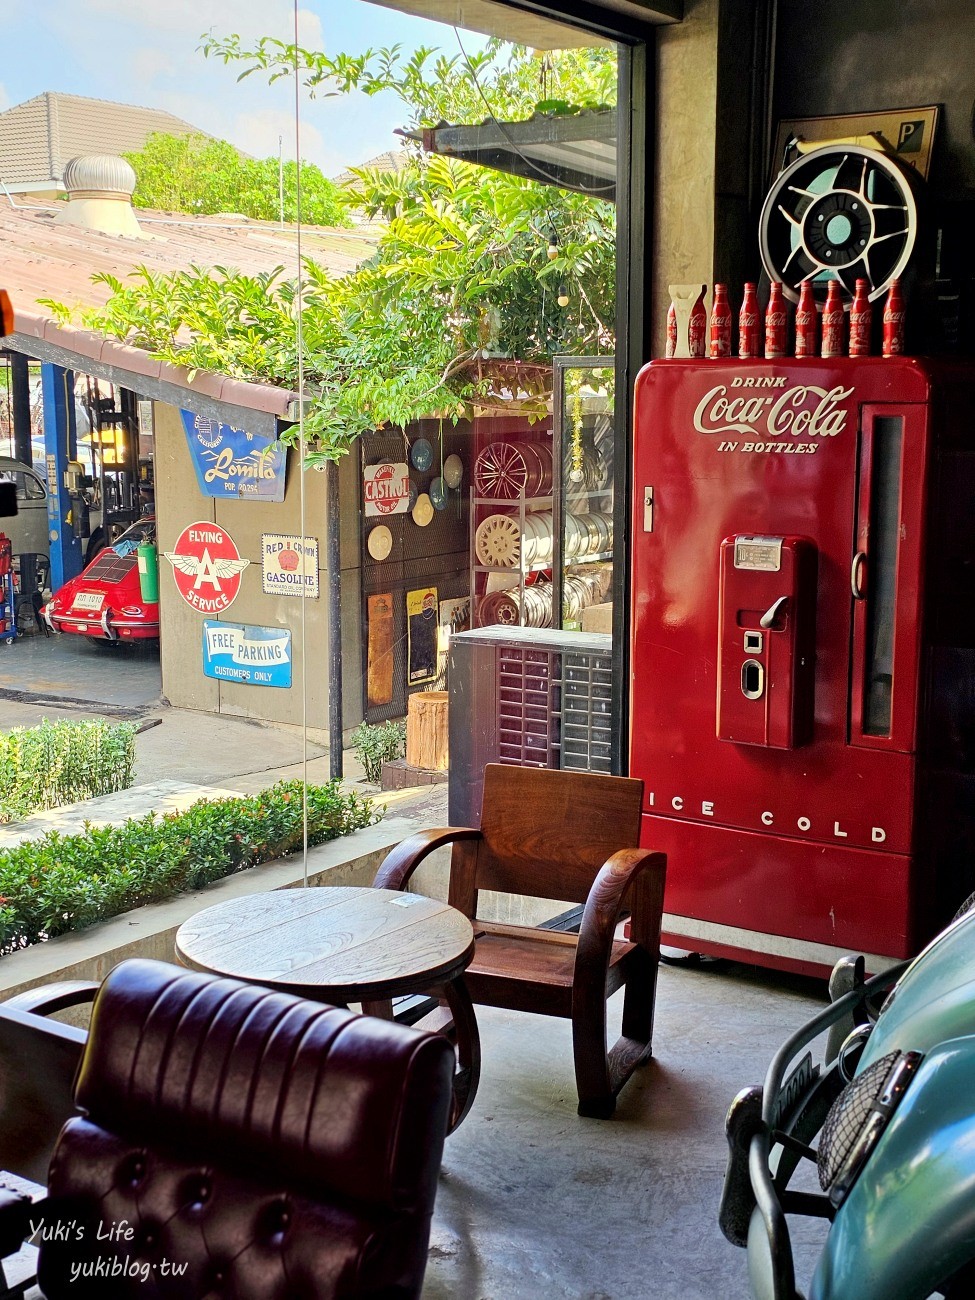 曼谷親子景點【Folktales Cafe & Bistro】古董車主題網美咖啡廳，兒童遊戲區太讚了！ - yuki.tw